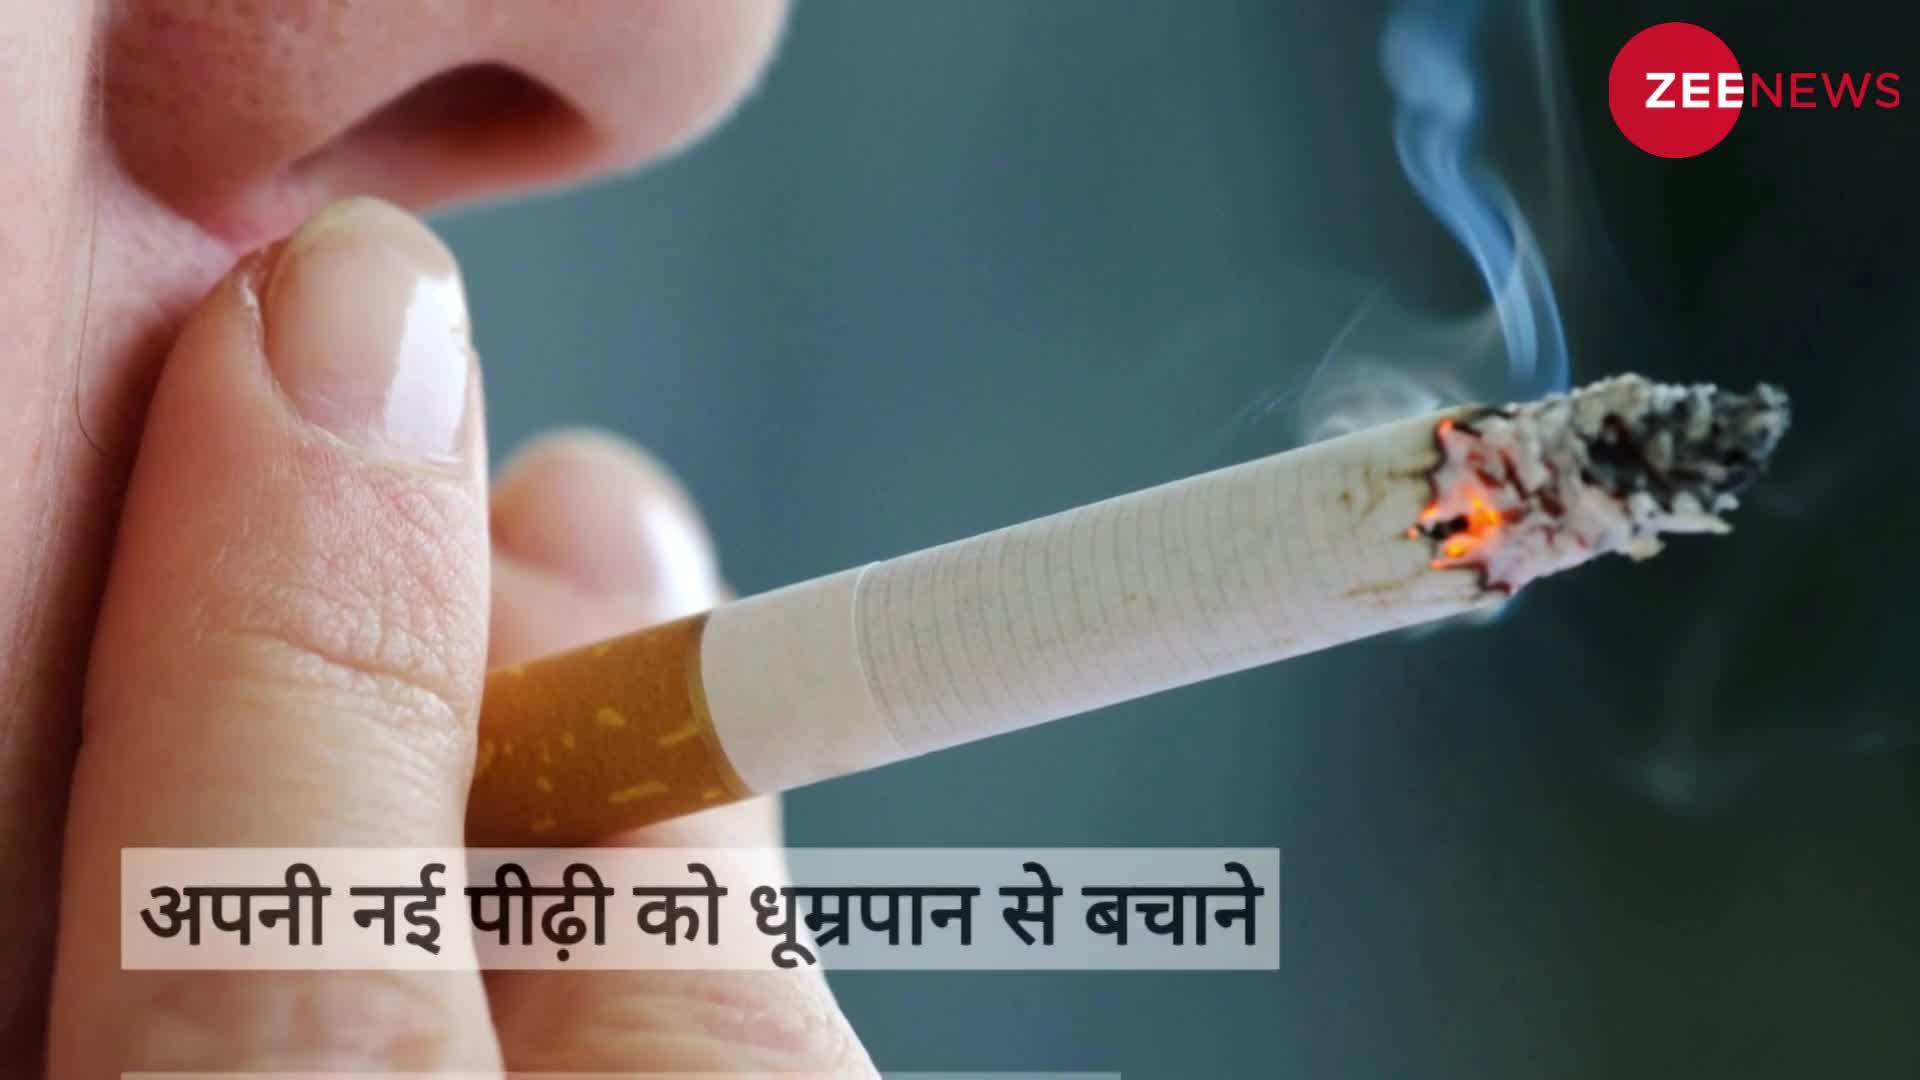 Smoking Ban: इस देश में युवा अब नहीं खरीद सकेंगे सिगरेट, सरकार ने लगाया बैन